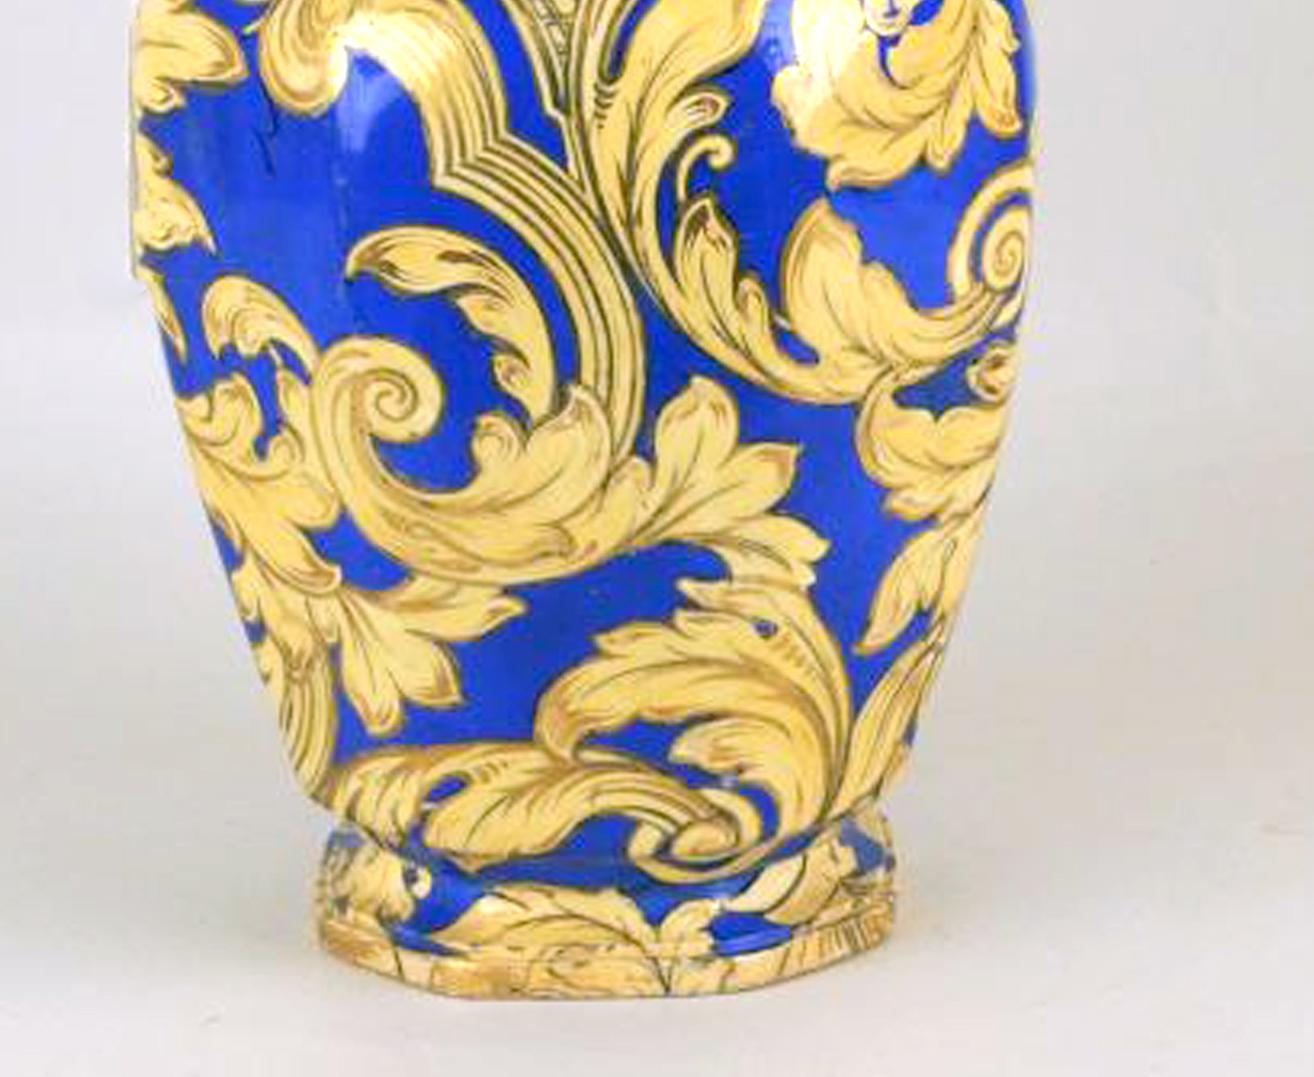 Le vase de forme octogonale a un fond bleu profond et est peint en doré et jaune avec des rinceaux rococo de feuillage et des vases de fleurs. Les poignées en forme de rouleau de dragon et décorées de dorure jaune, le double dauphin est de même